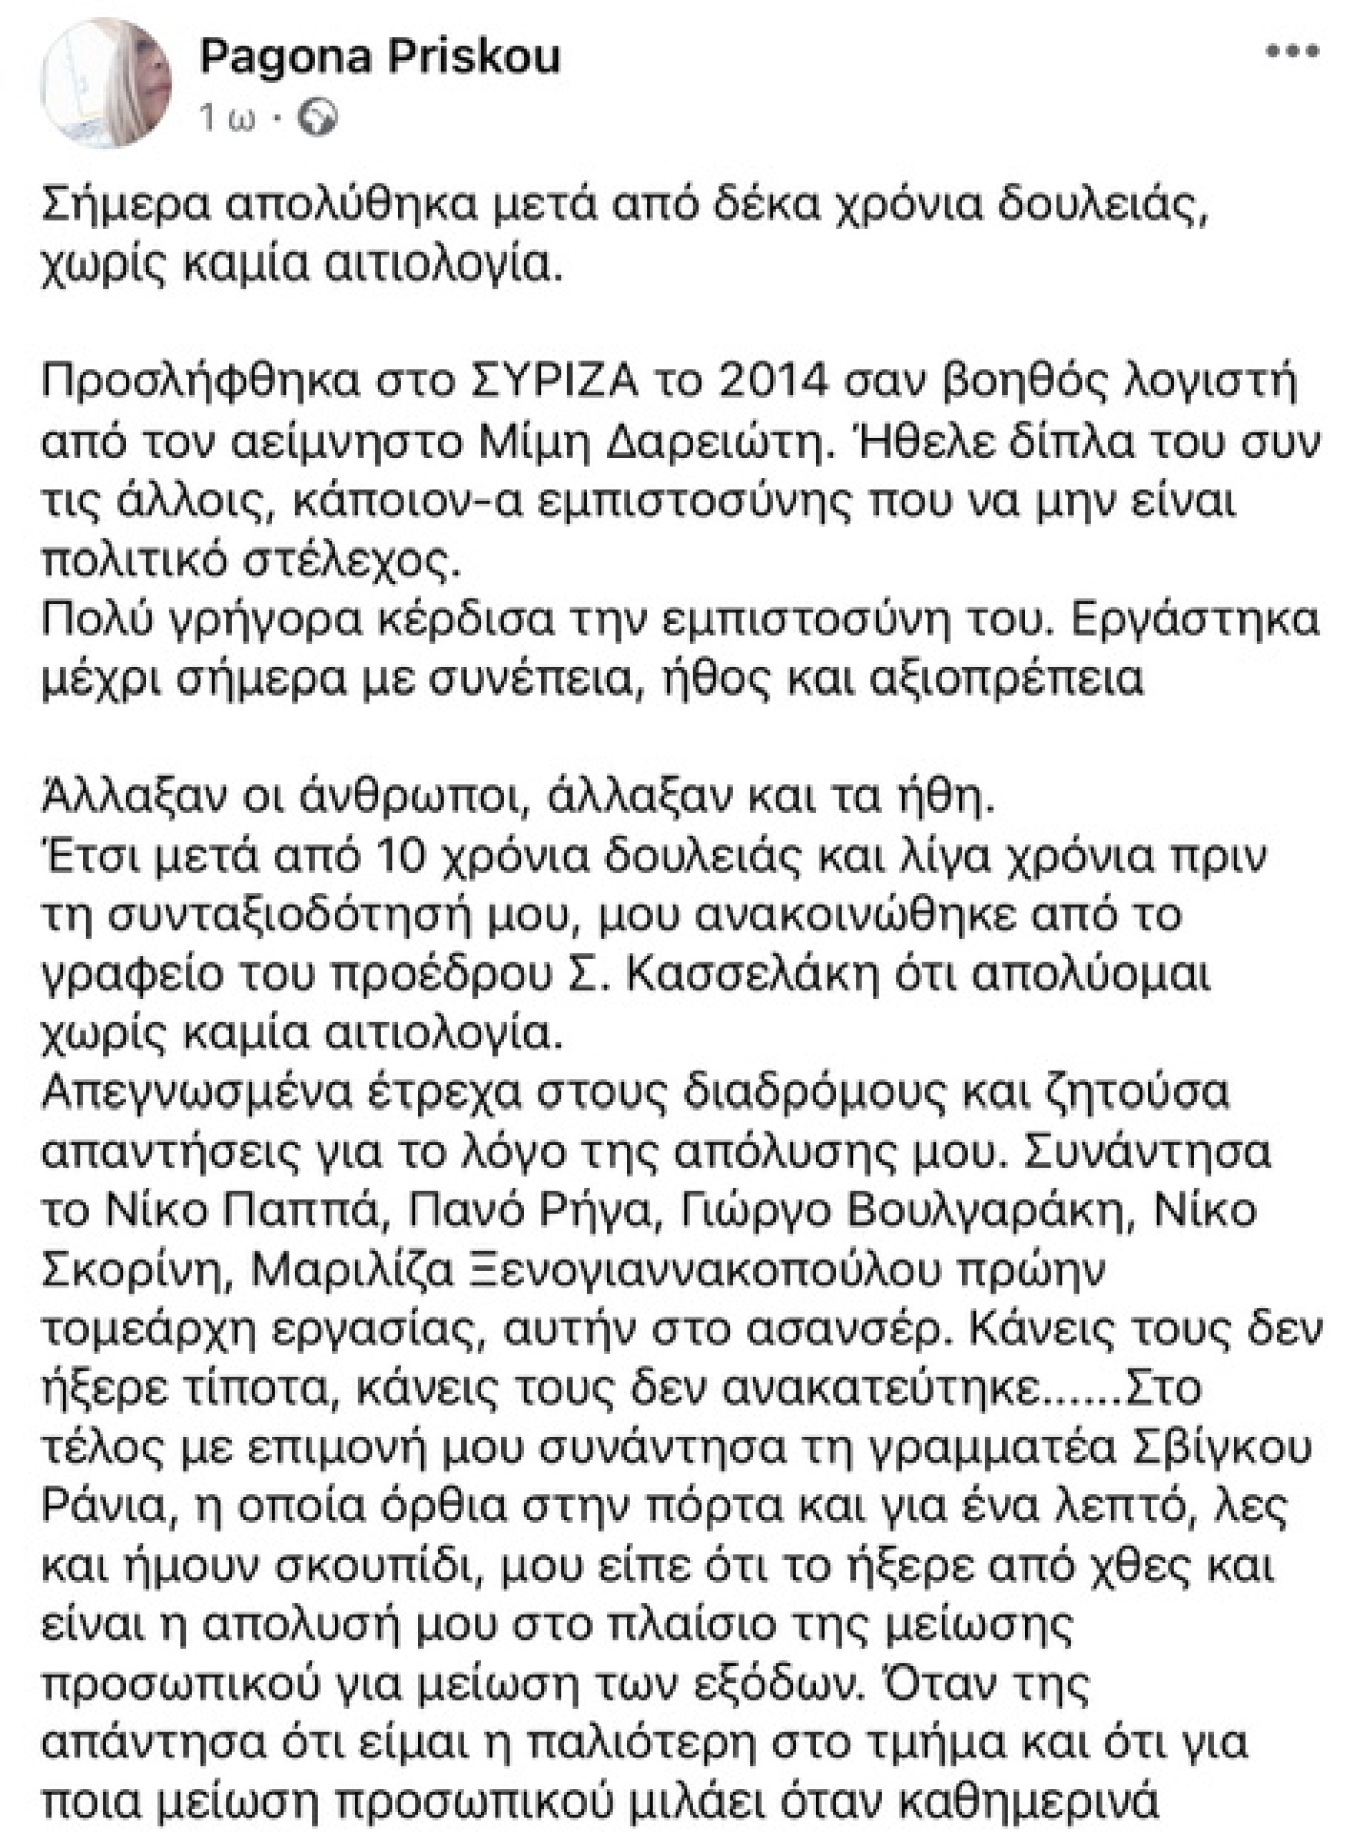 Στους λόγους της απόλυσής της από τον ΣΥΡΙΖΑ αναφέρεται σε ανάρτηση της στα κοινωνικά δίκτυα η Παγώνα Πρίσκου, η οποία απομακρύνθηκε από το λογιστήριο της Κουμουνδούρου.  «Η απολυσή μου είναι μια εκδικητική απόλυση λόγω "οικογενειακής ευθύνης". Απολύθηκα γιατί είμαι κουνιάδα του Πάνου Σκουρλέτη πρώην υπουργού και βουλευτή του ΣΥΡΙΖΑ και τώρα στελέχους της Νέας Αριστεράς», αναφέρει η κυρία Προίσκου, προσθέτοντας πως «λυπάμαι για τον πρόεδρό του Σ. Κασσελάκη , του "ελληνικού όνειρου-ζωή με αξιοπρέπεια" και το